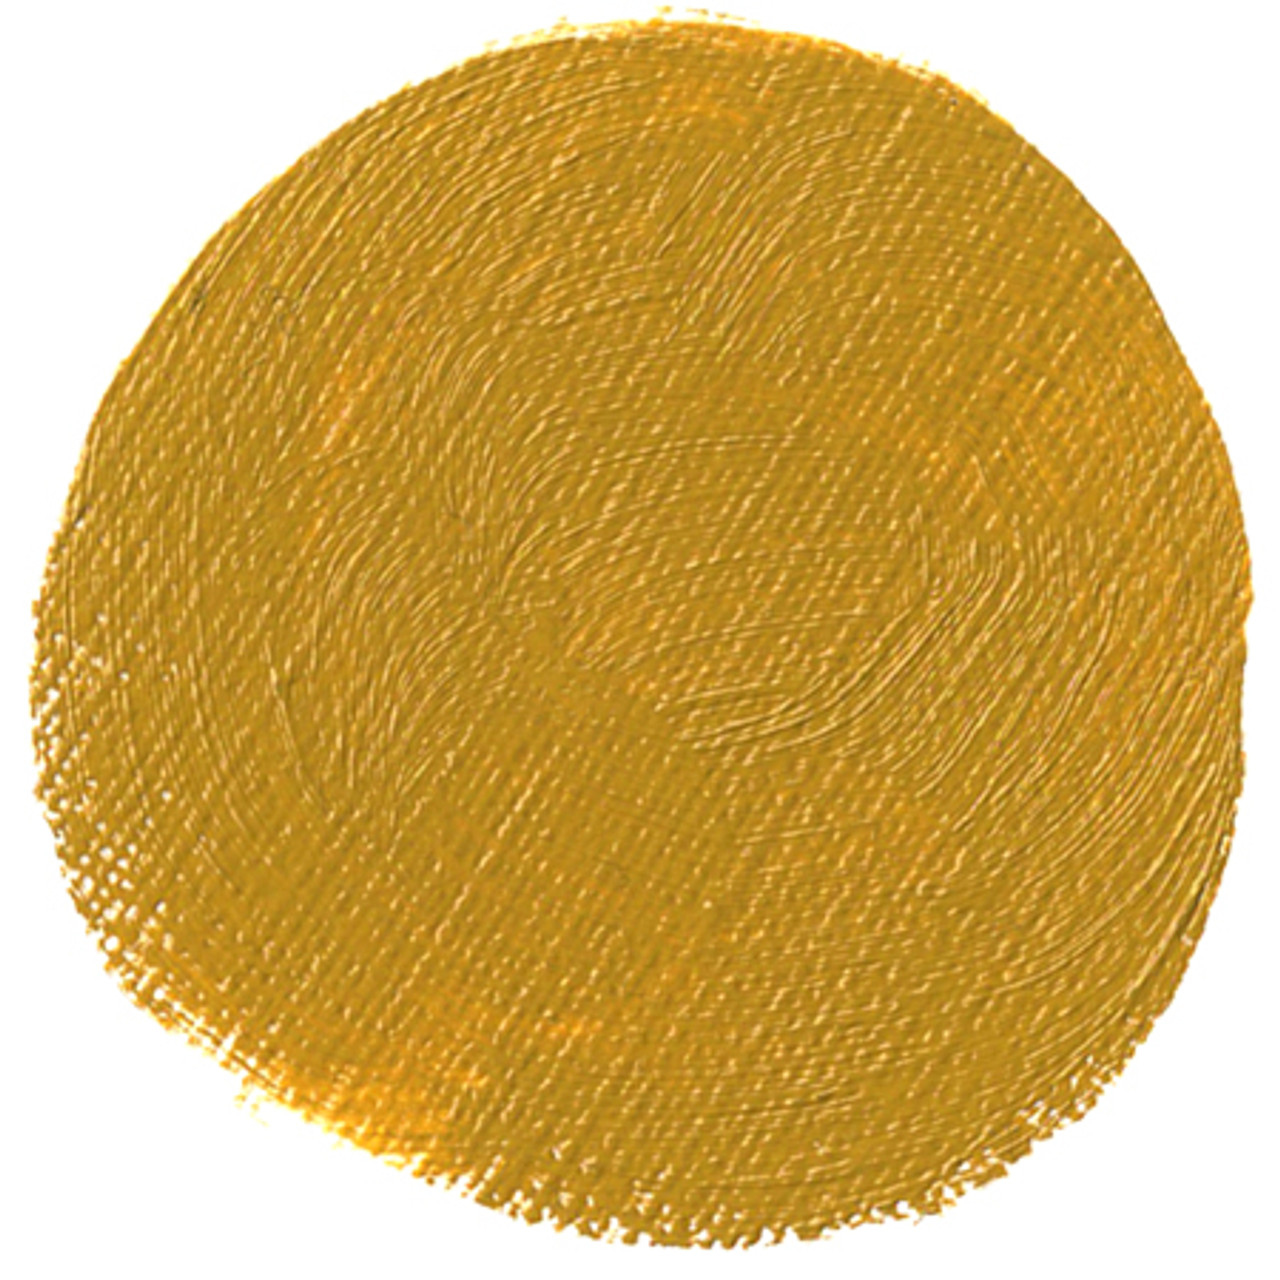 Da Vinci Yellow Ochre Artist Oil Paint - 37mL